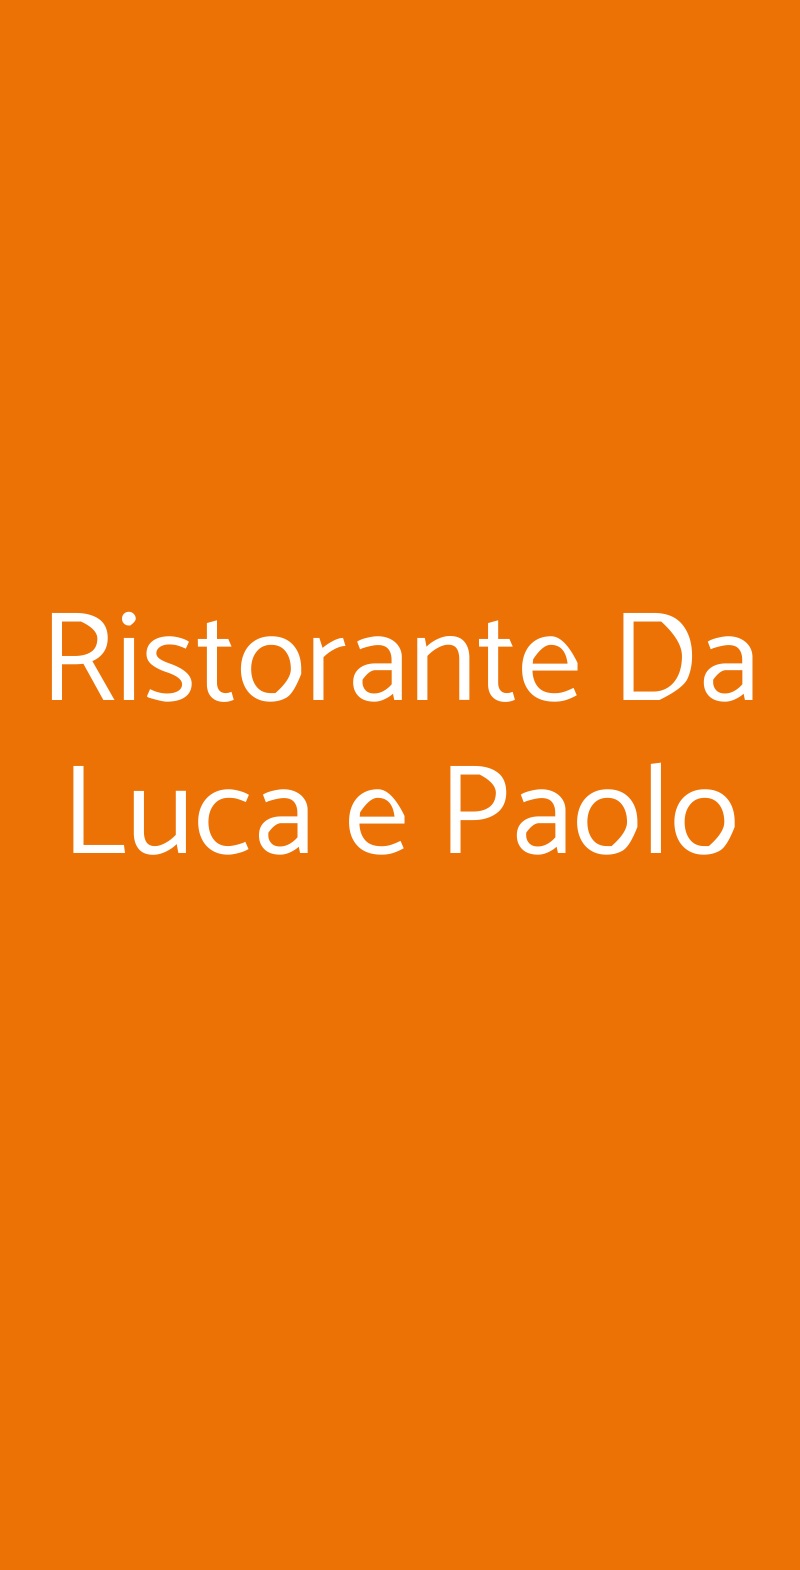 Ristorante Da Luca e Paolo Recco menù 1 pagina